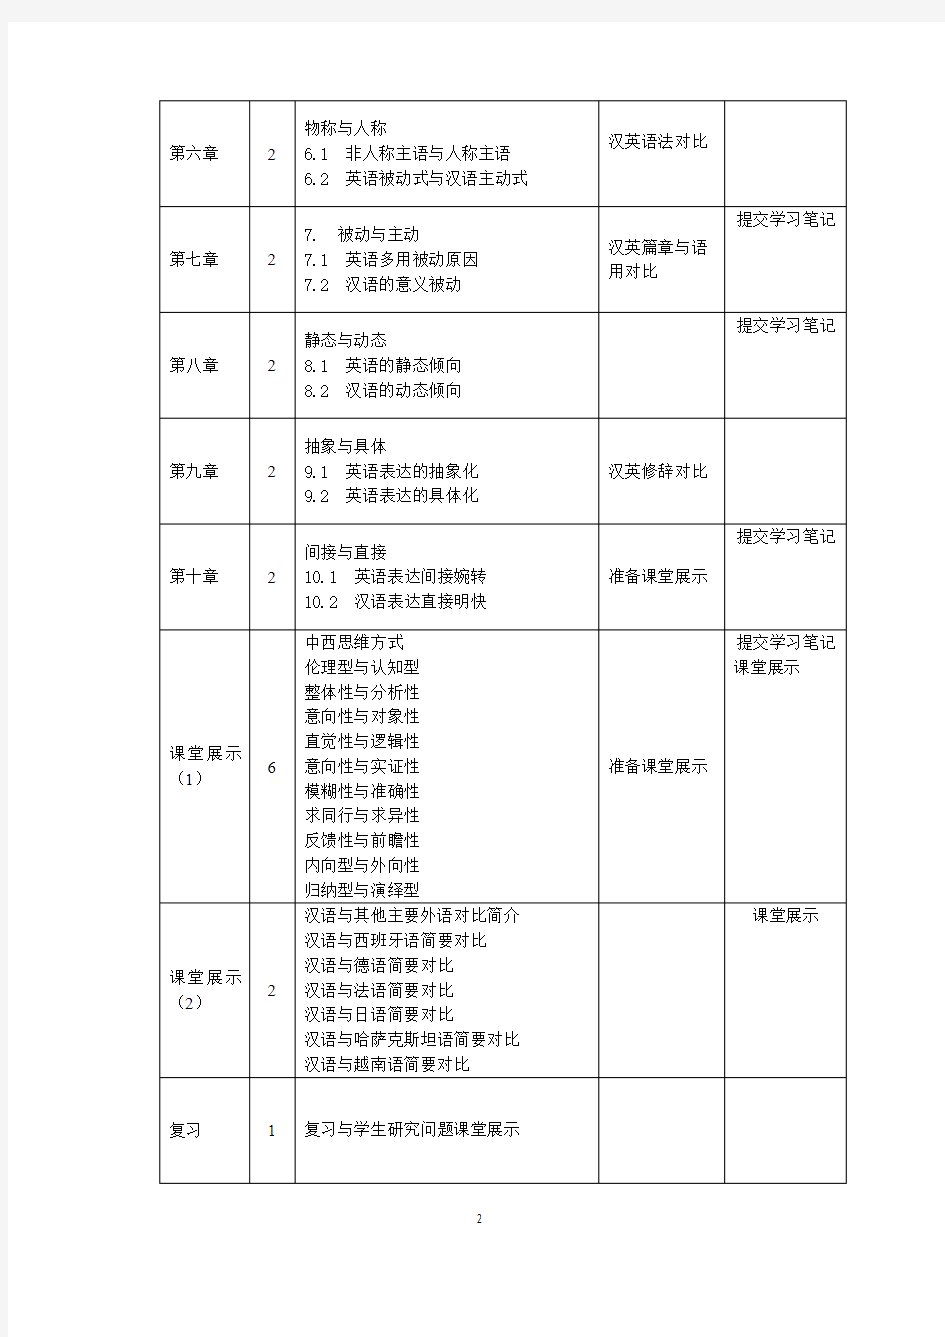 《汉外语言对比》课程教学日历